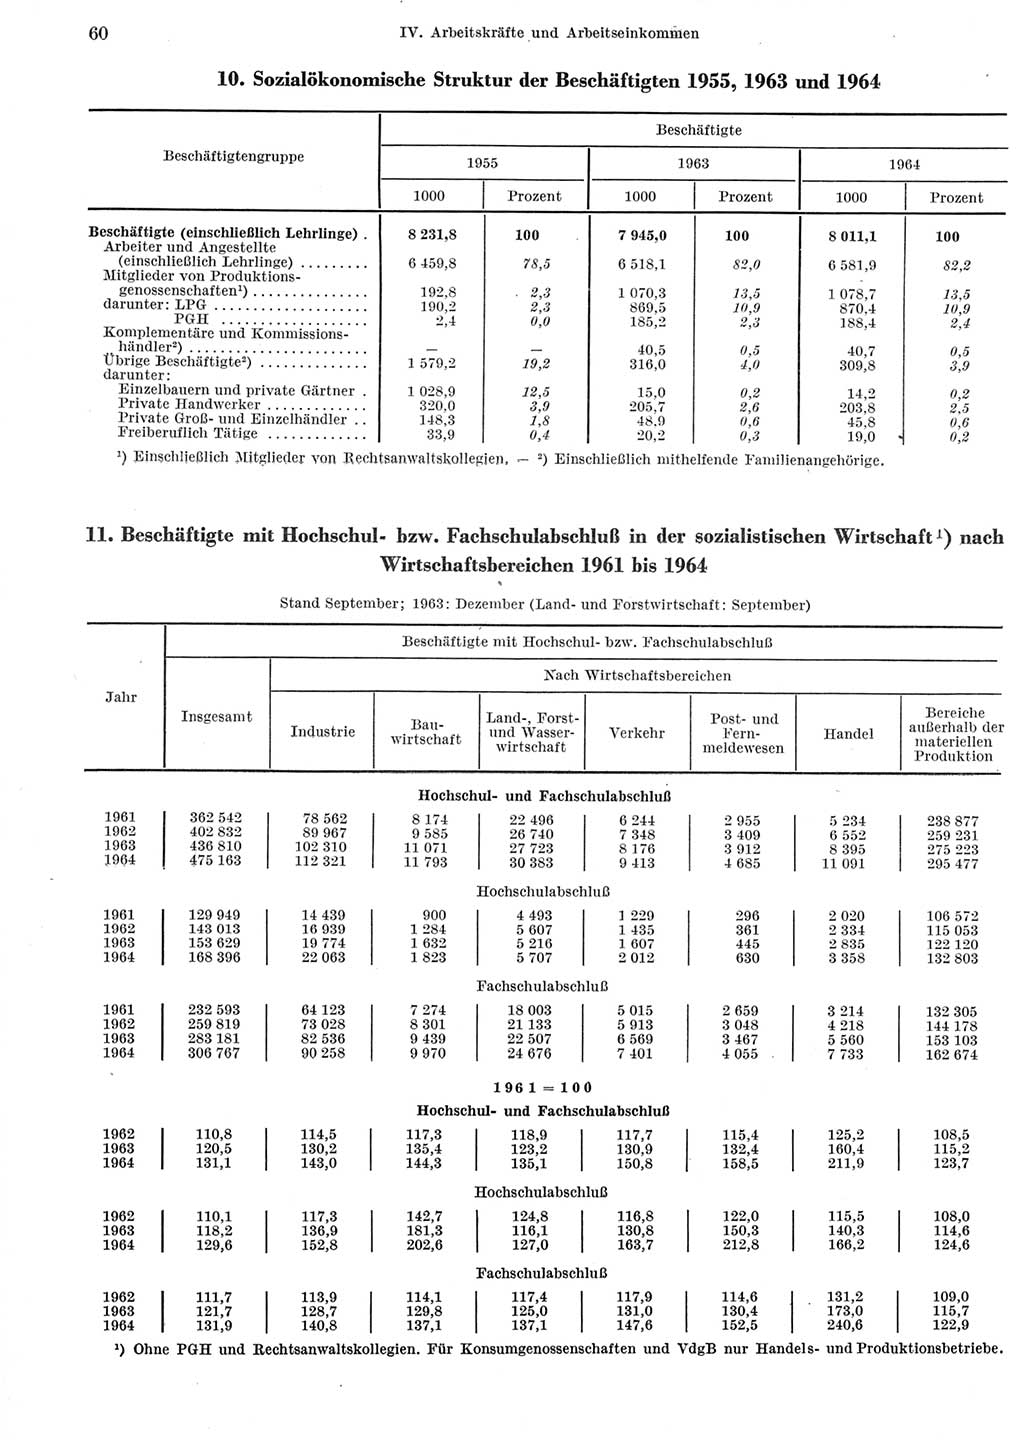 Statistisches Jahrbuch der Deutschen Demokratischen Republik (DDR) 1965, Seite 60 (Stat. Jb. DDR 1965, S. 60)